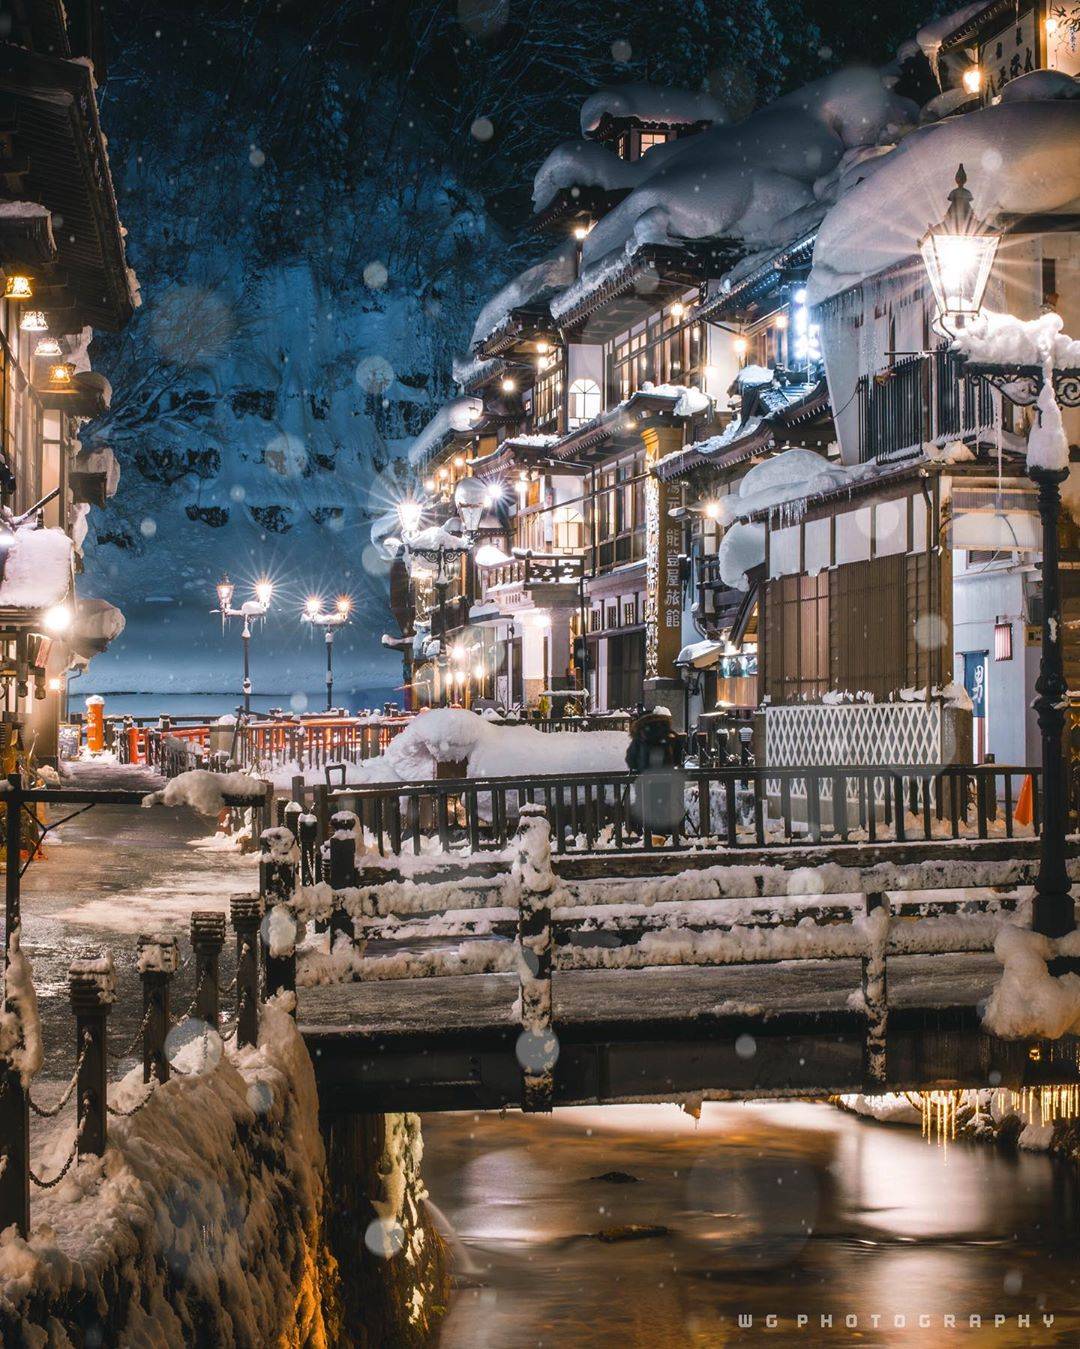 日本雪景溫泉 銀山溫泉是因為兩排溫泉旅店有著古色古香的懷舊感，而大受旅行人士歡迎。(credit：wasabi_guma）